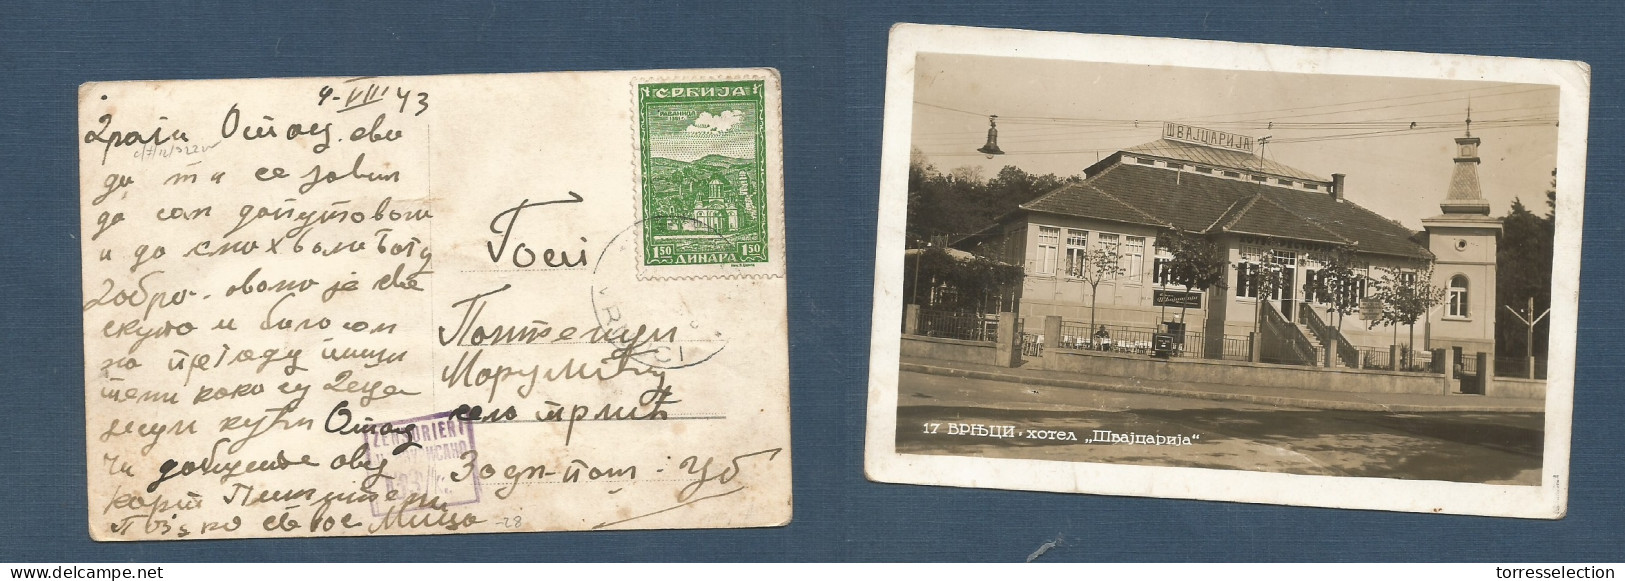 SERBIA. 1943 (4 Aug) Vrnuci Local WWII Censored Ppc. Interesting. Scarce Private Item Fkd 1,50p Green. XSALE. - Serbia